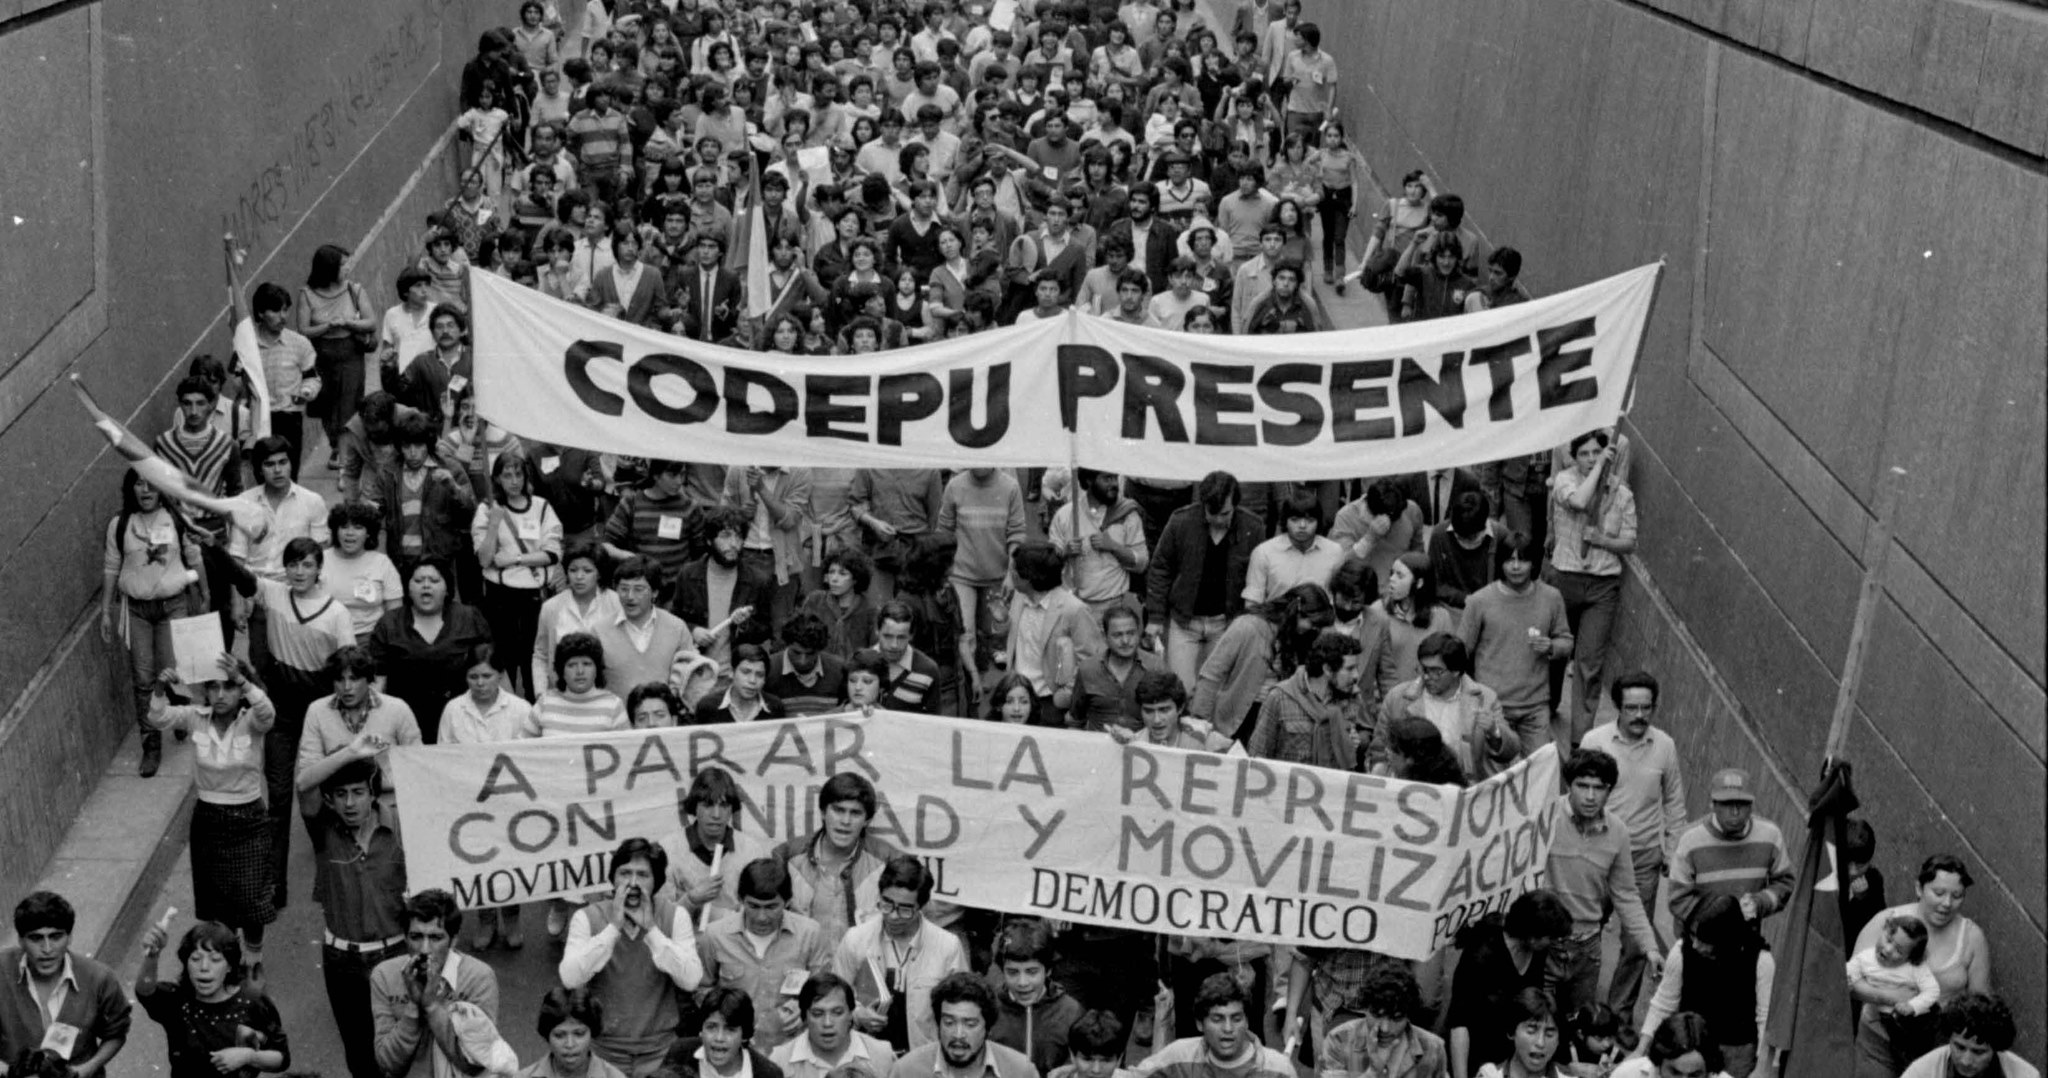 Organización y conservación de los archivos de los Derechos Humanos de CODEPU: 1980-2000 (Registrados en el Programa Memoria del Mundo de la UNESCO) (1ª fase)